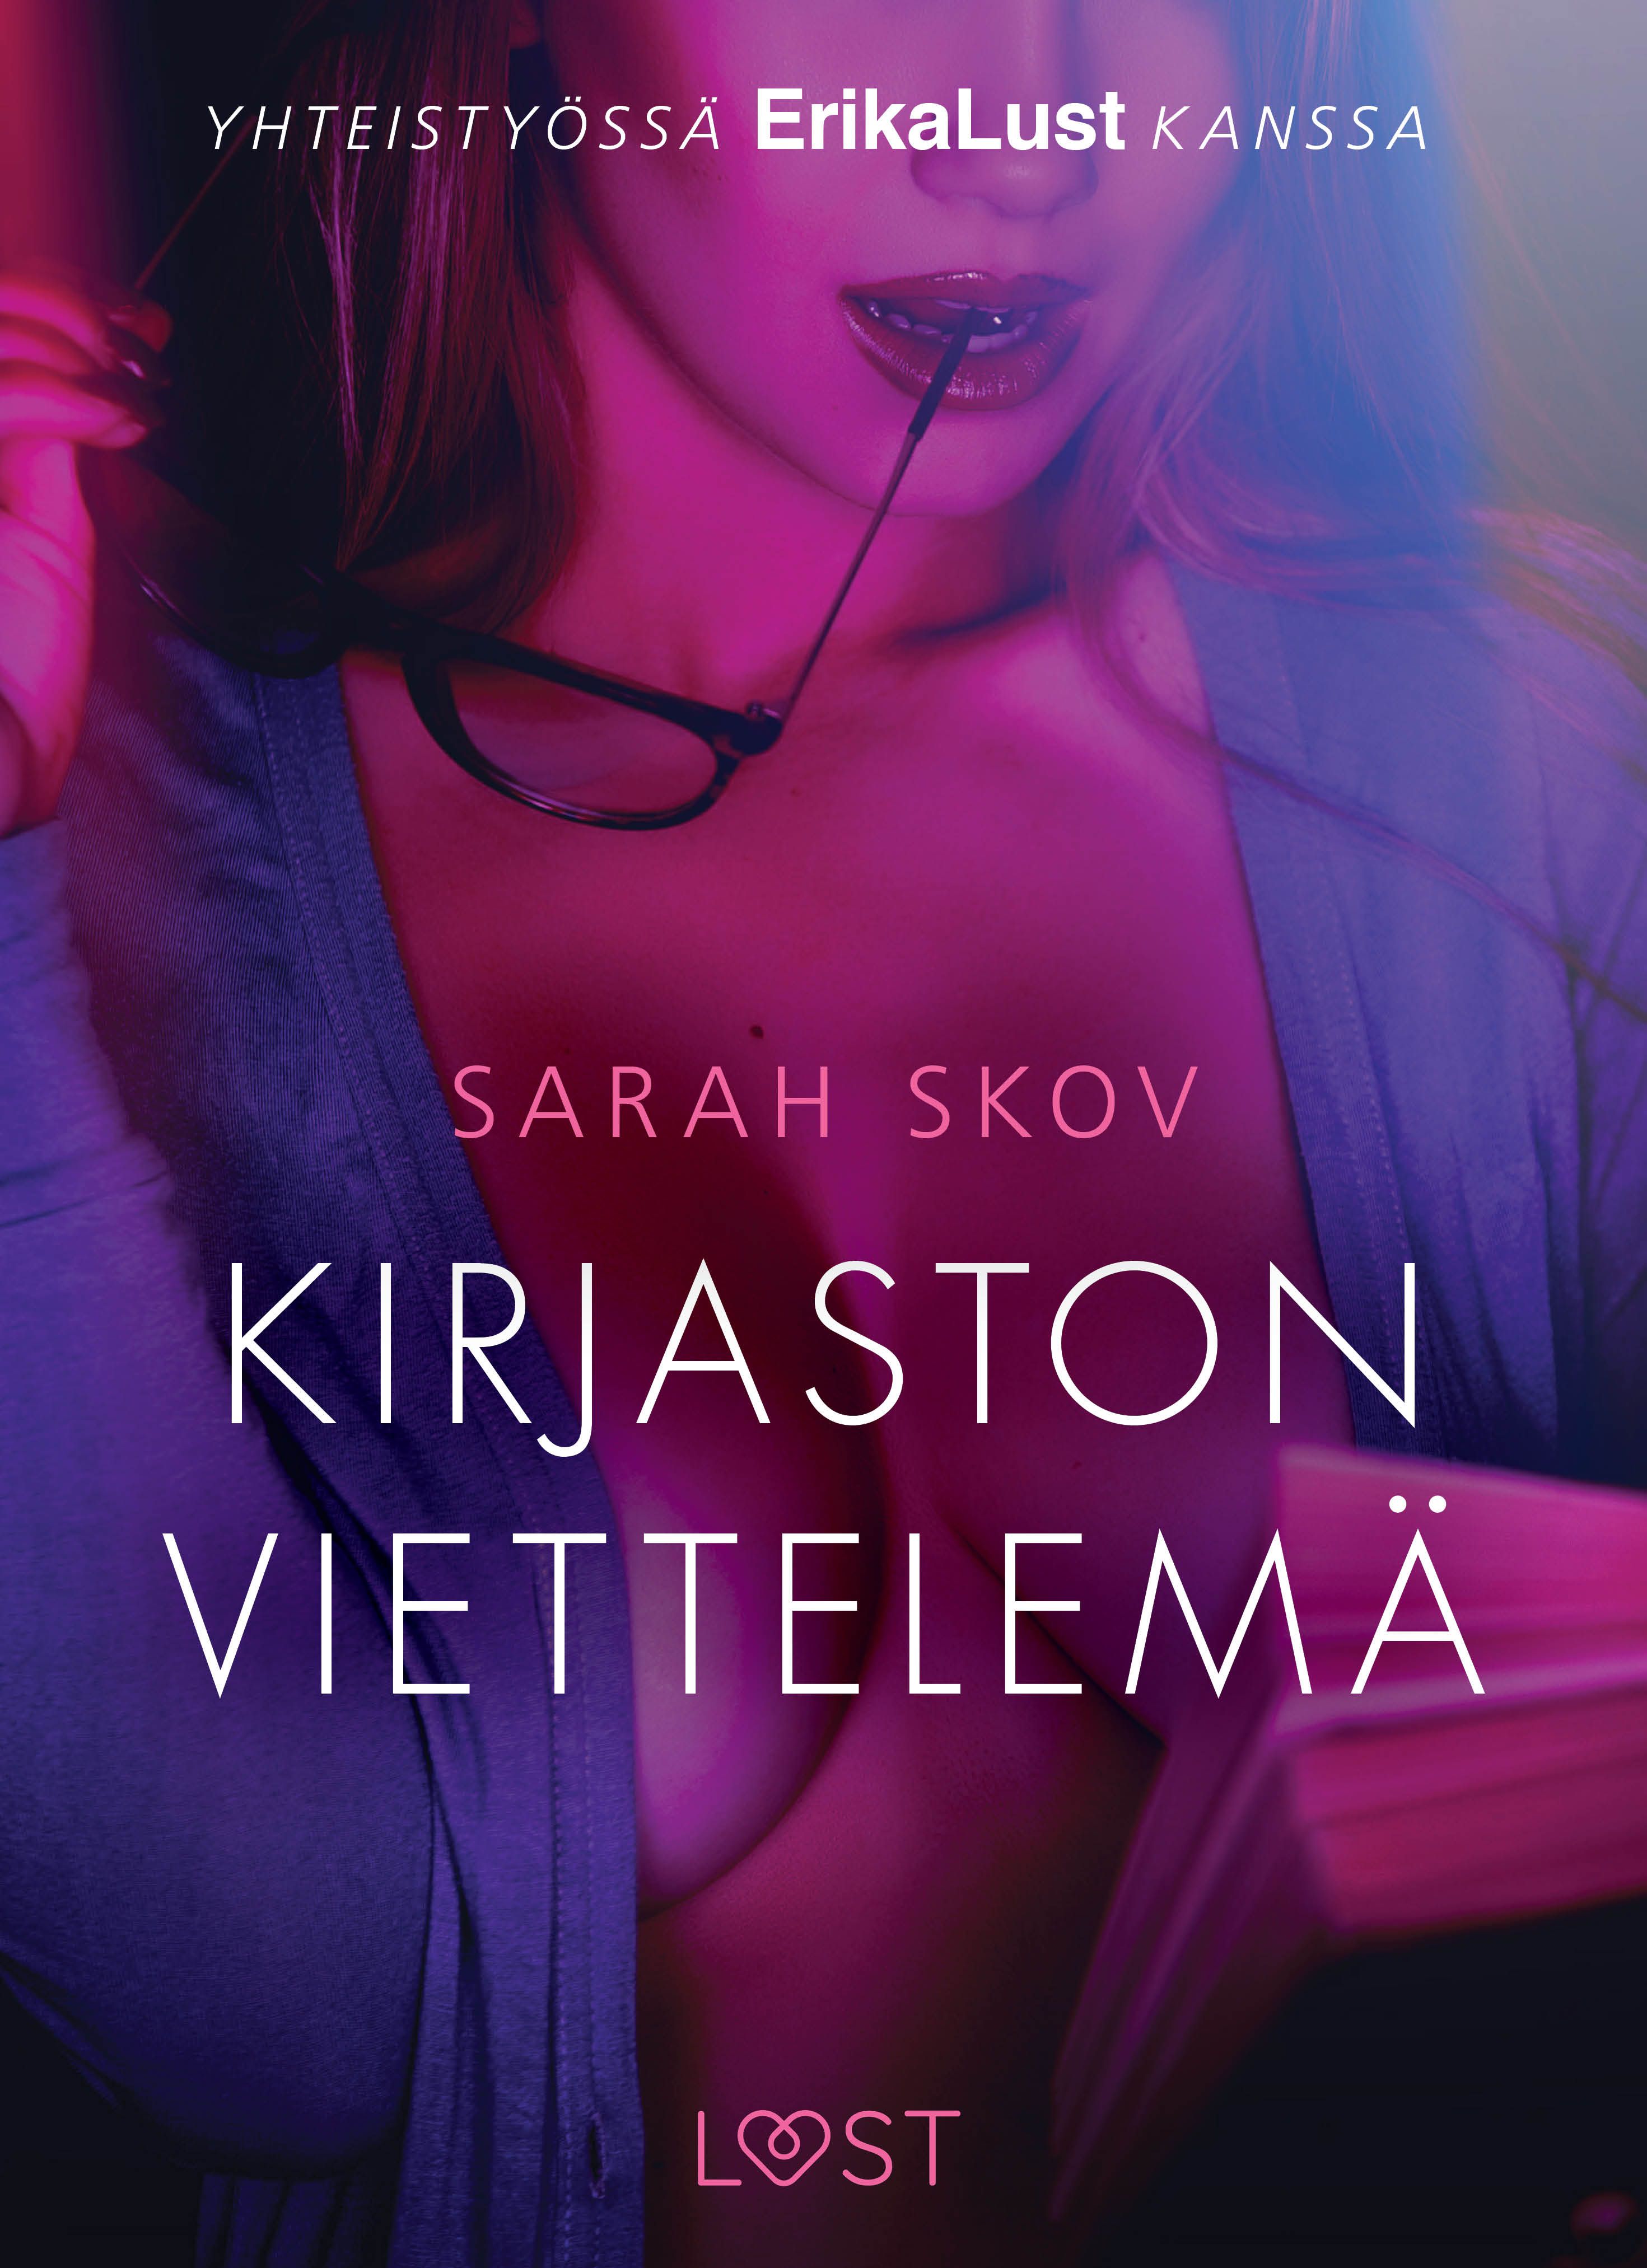 Kirjaston viettelemä - eroottinen novelli, e-bog af Sarah Skov